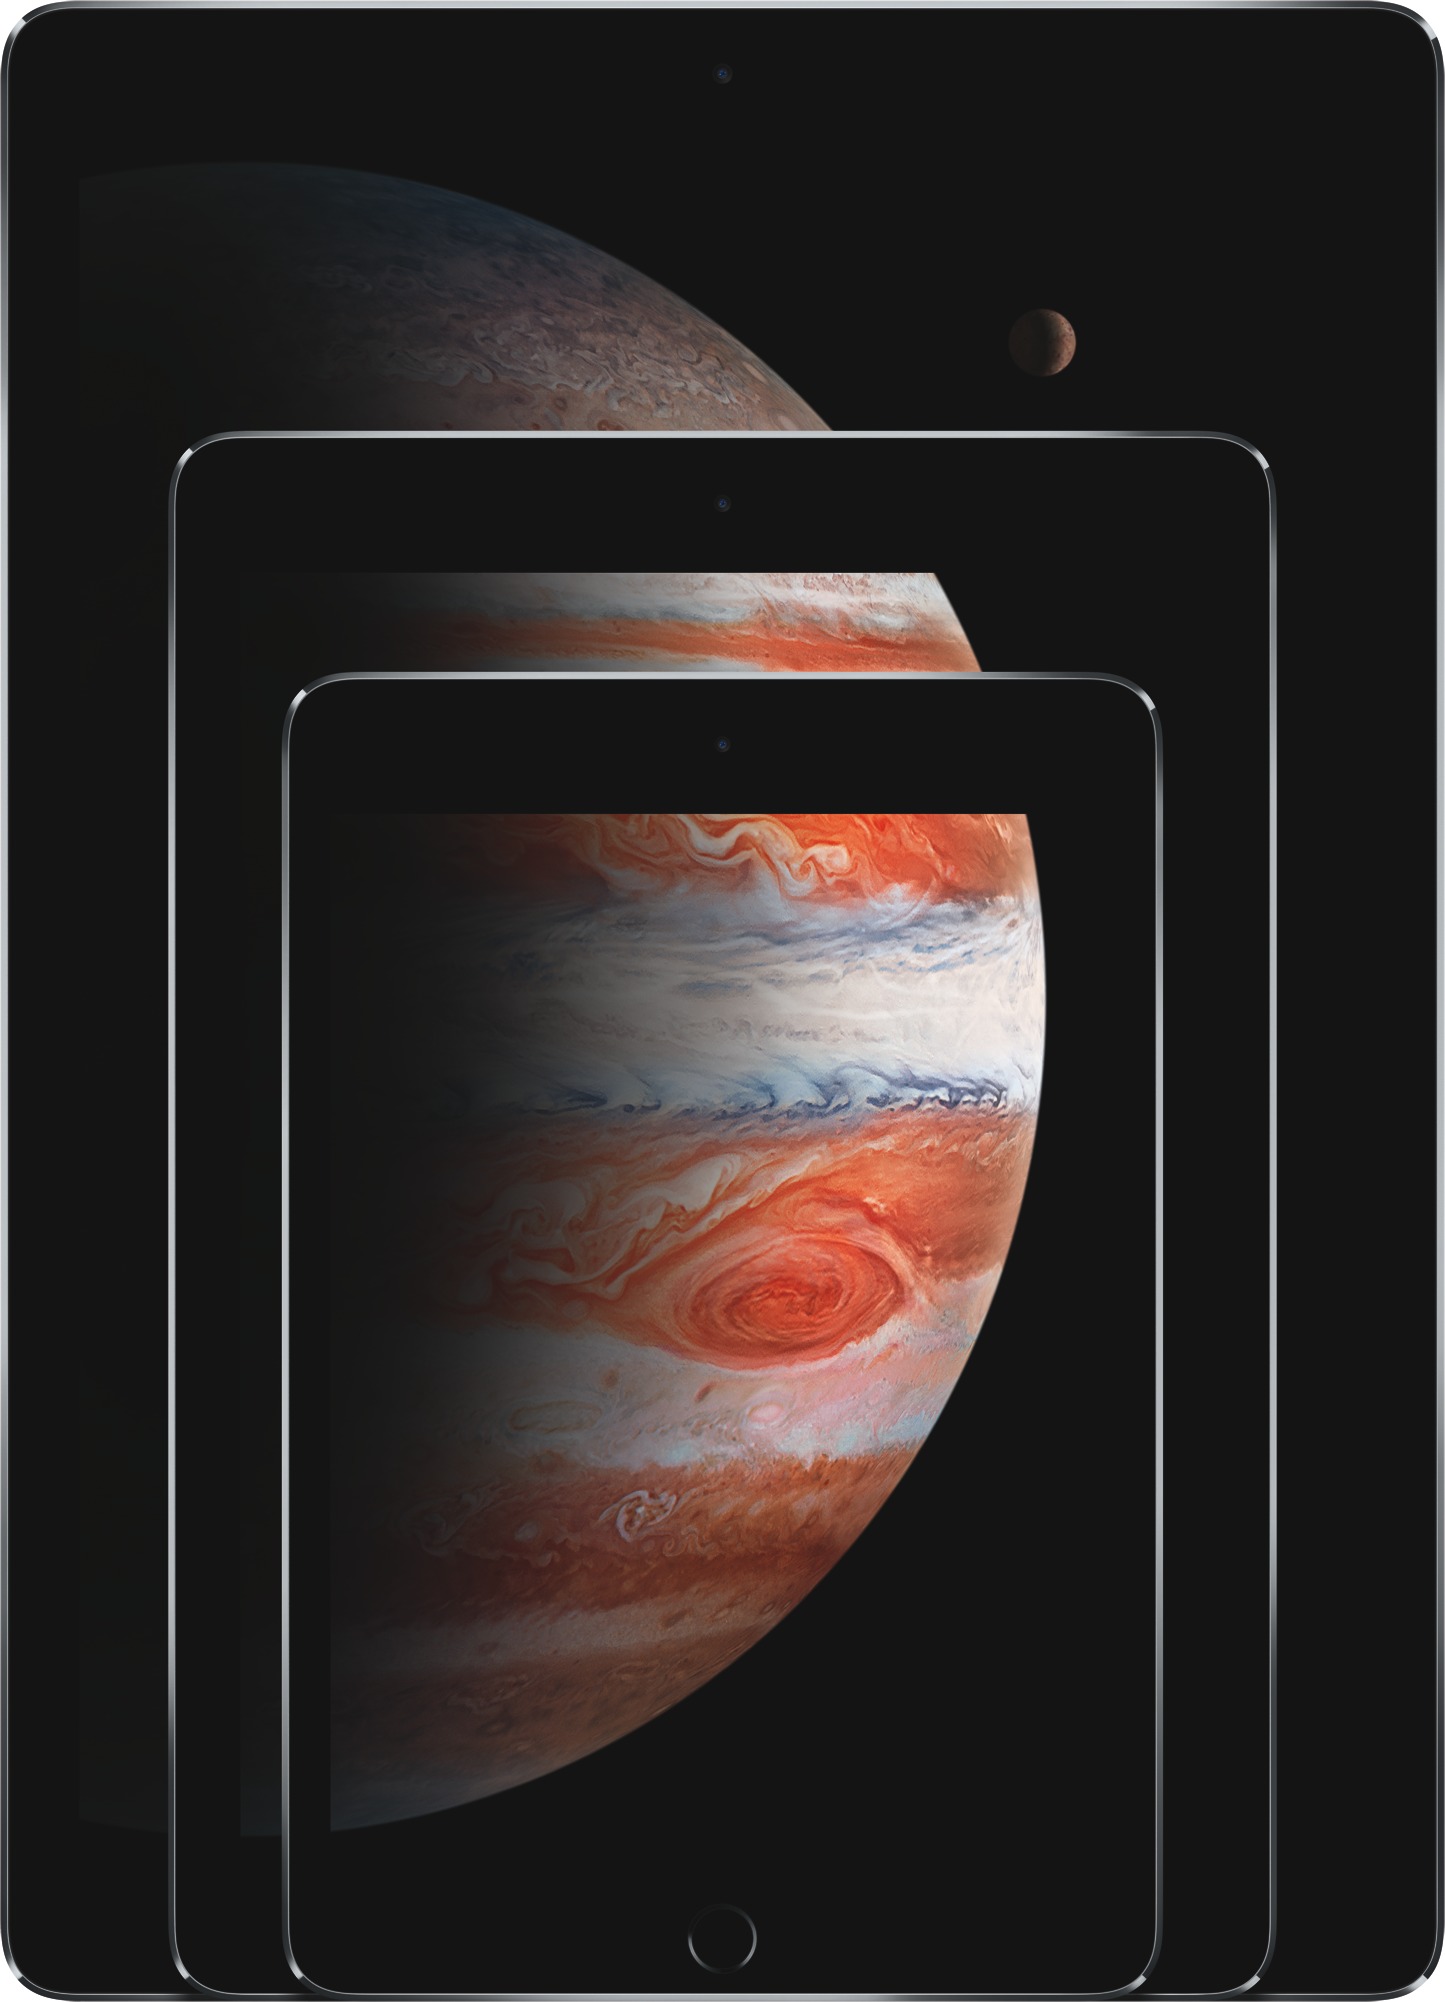 Imagem em tamanho real de  Comparar modelos iPads .